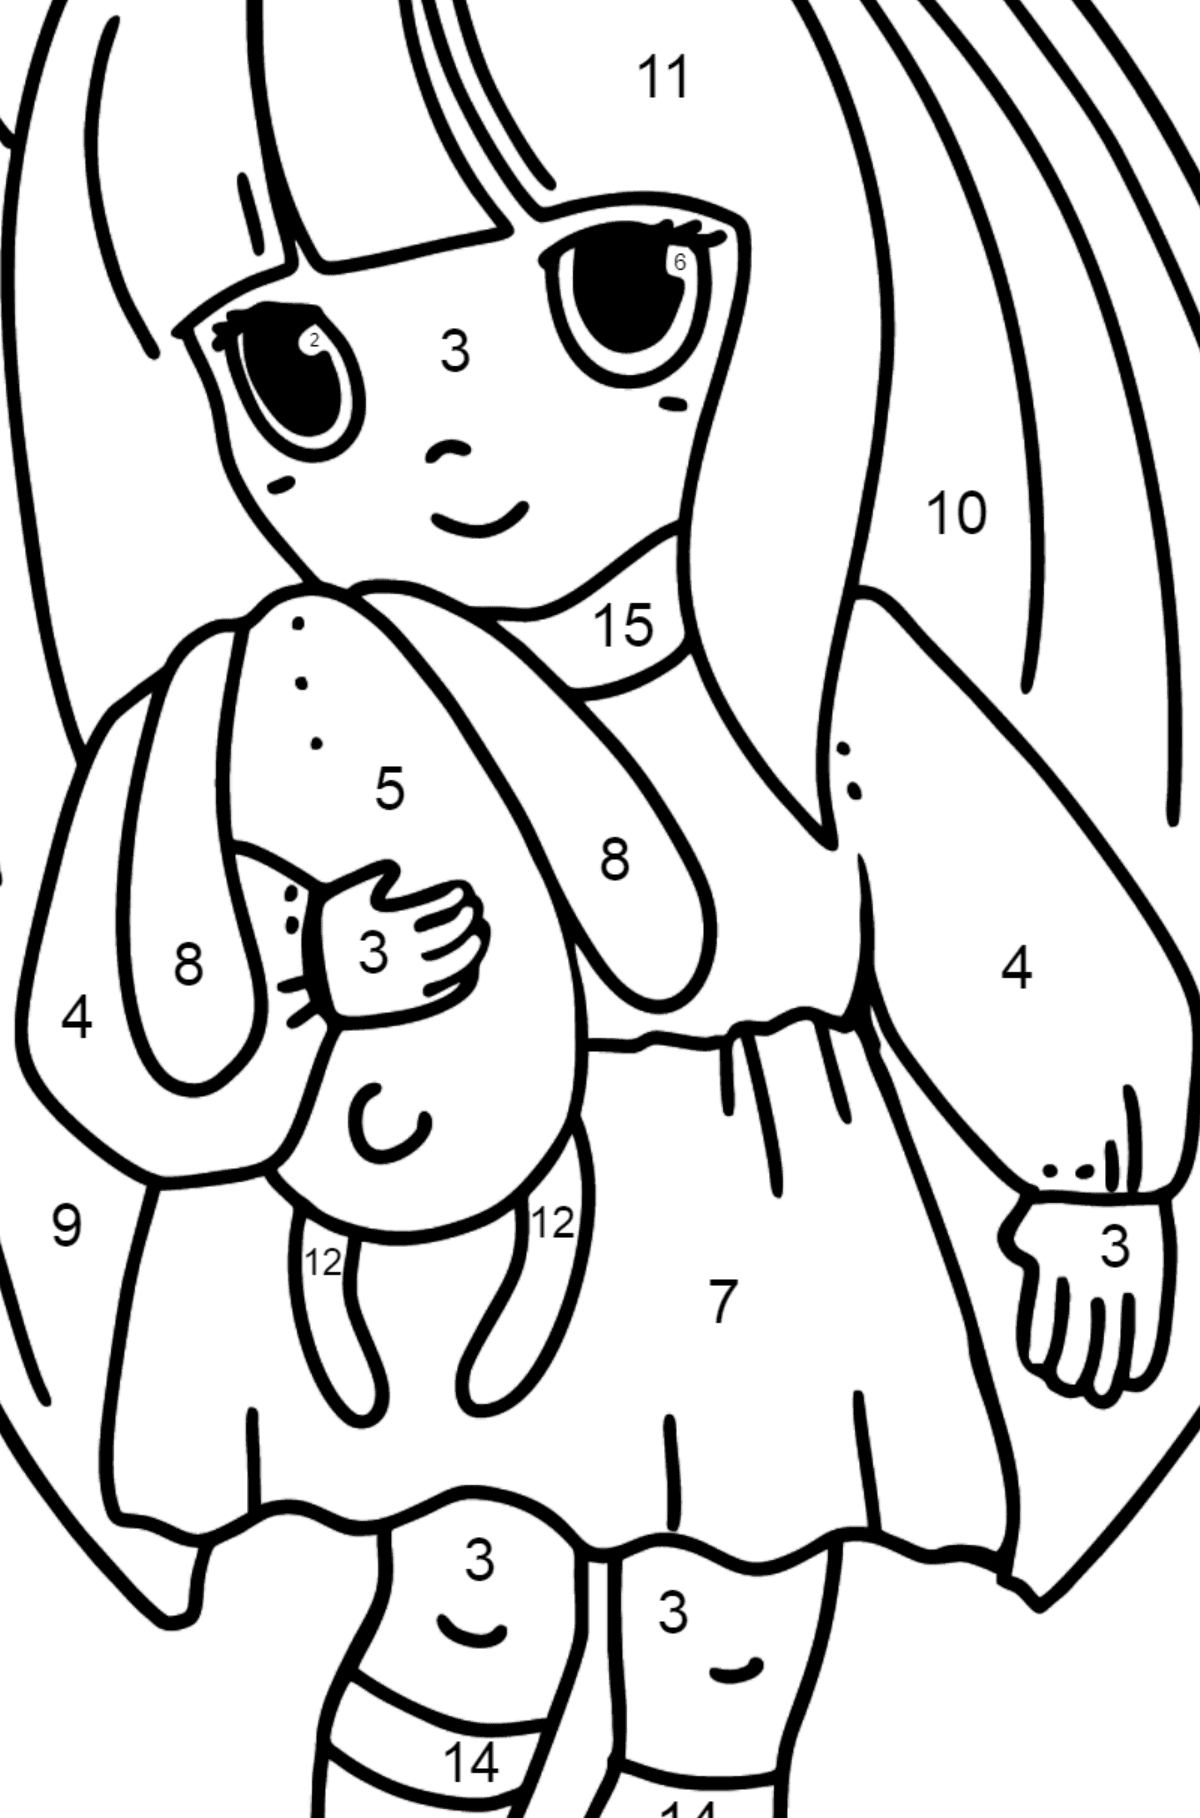 Anime kleines Mädchen Ausmalbilder - Malen nach Zahlen für Kinder